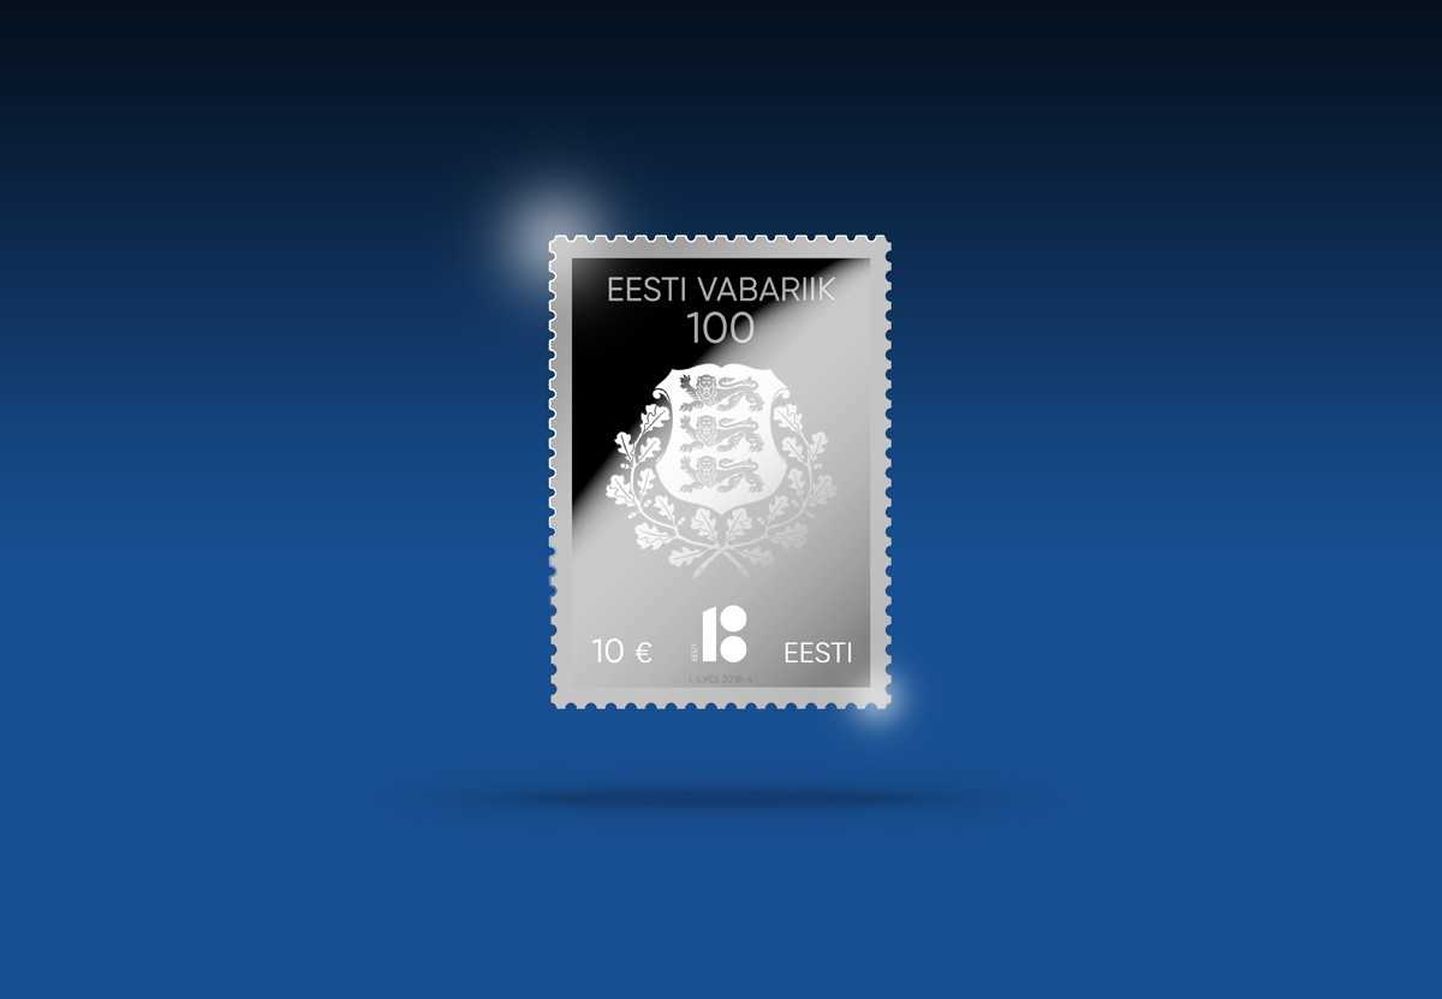 Серебряная почтовая марка, выпущенная к столетию республики.